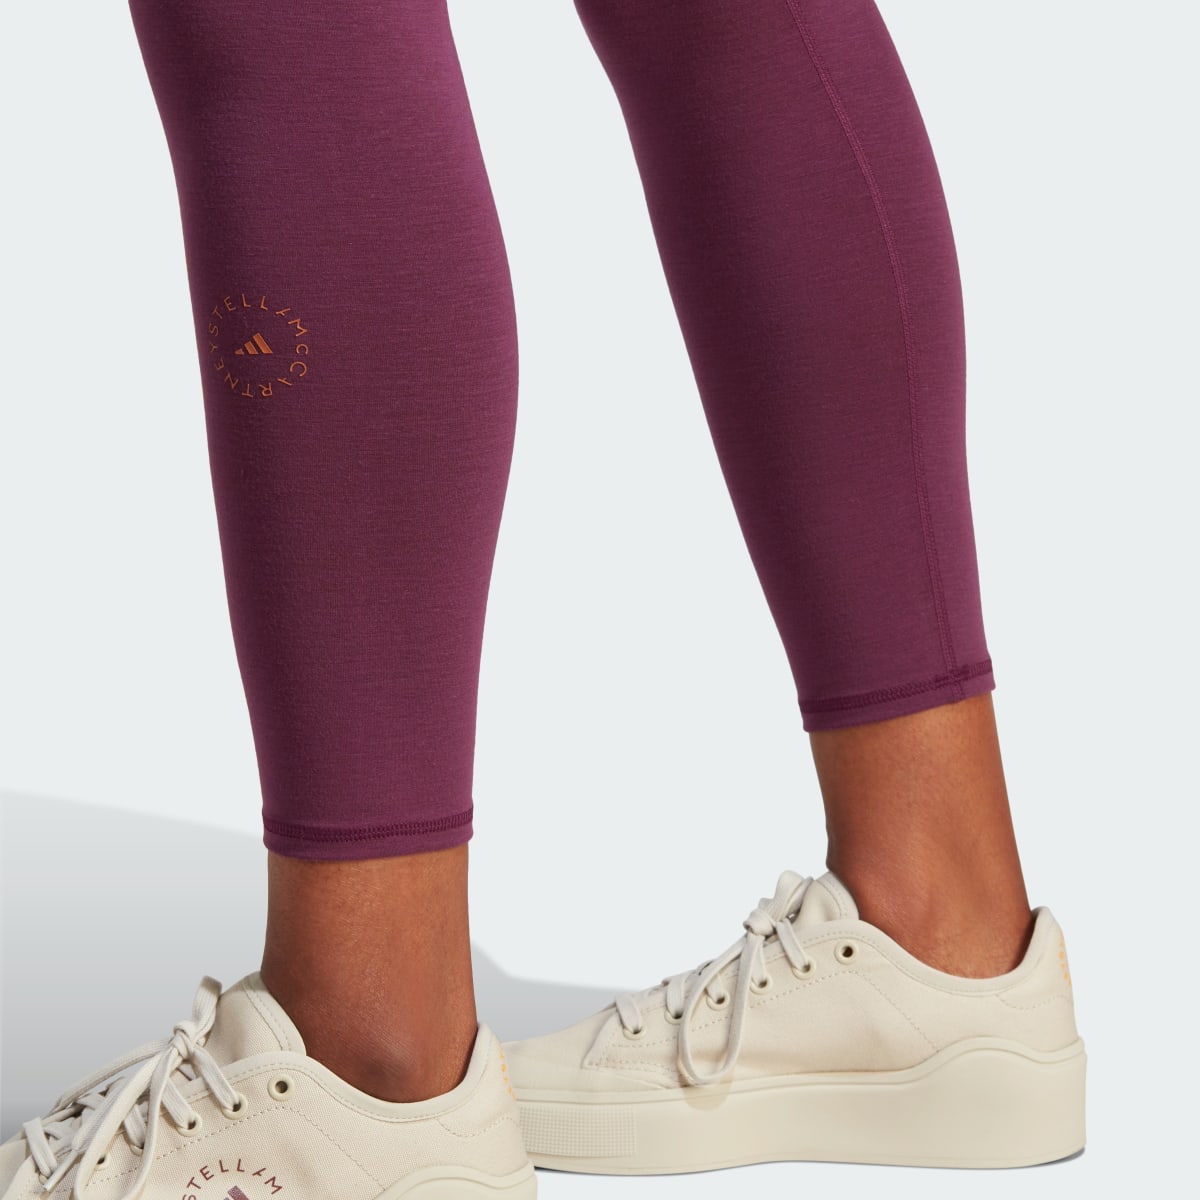 Adidas by Stella McCartney 7/8 Yoga Leggings. 6